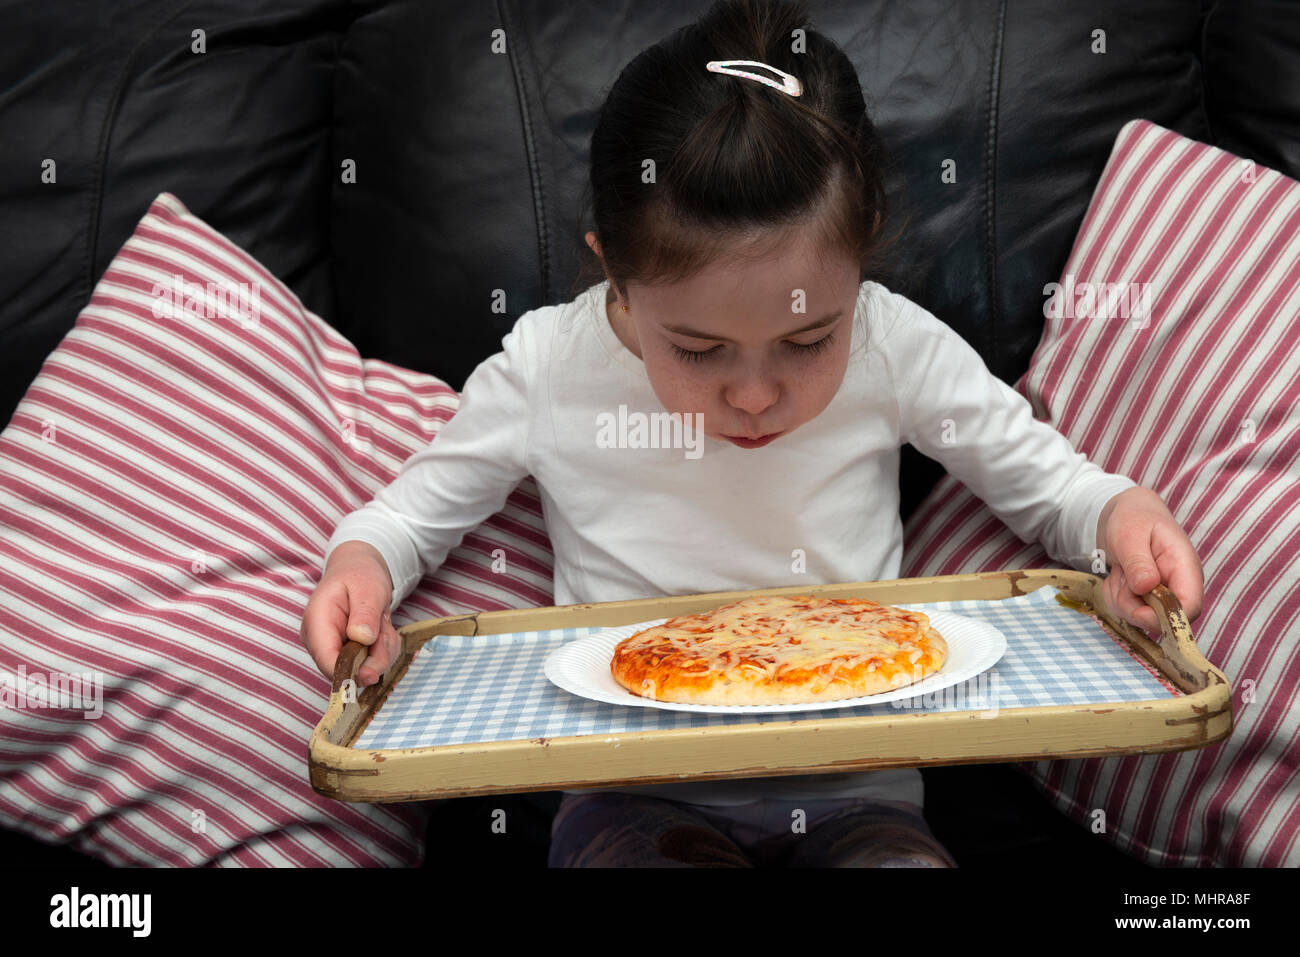 Jeune fille en soufflant sur une pizza chaude Banque D'Images